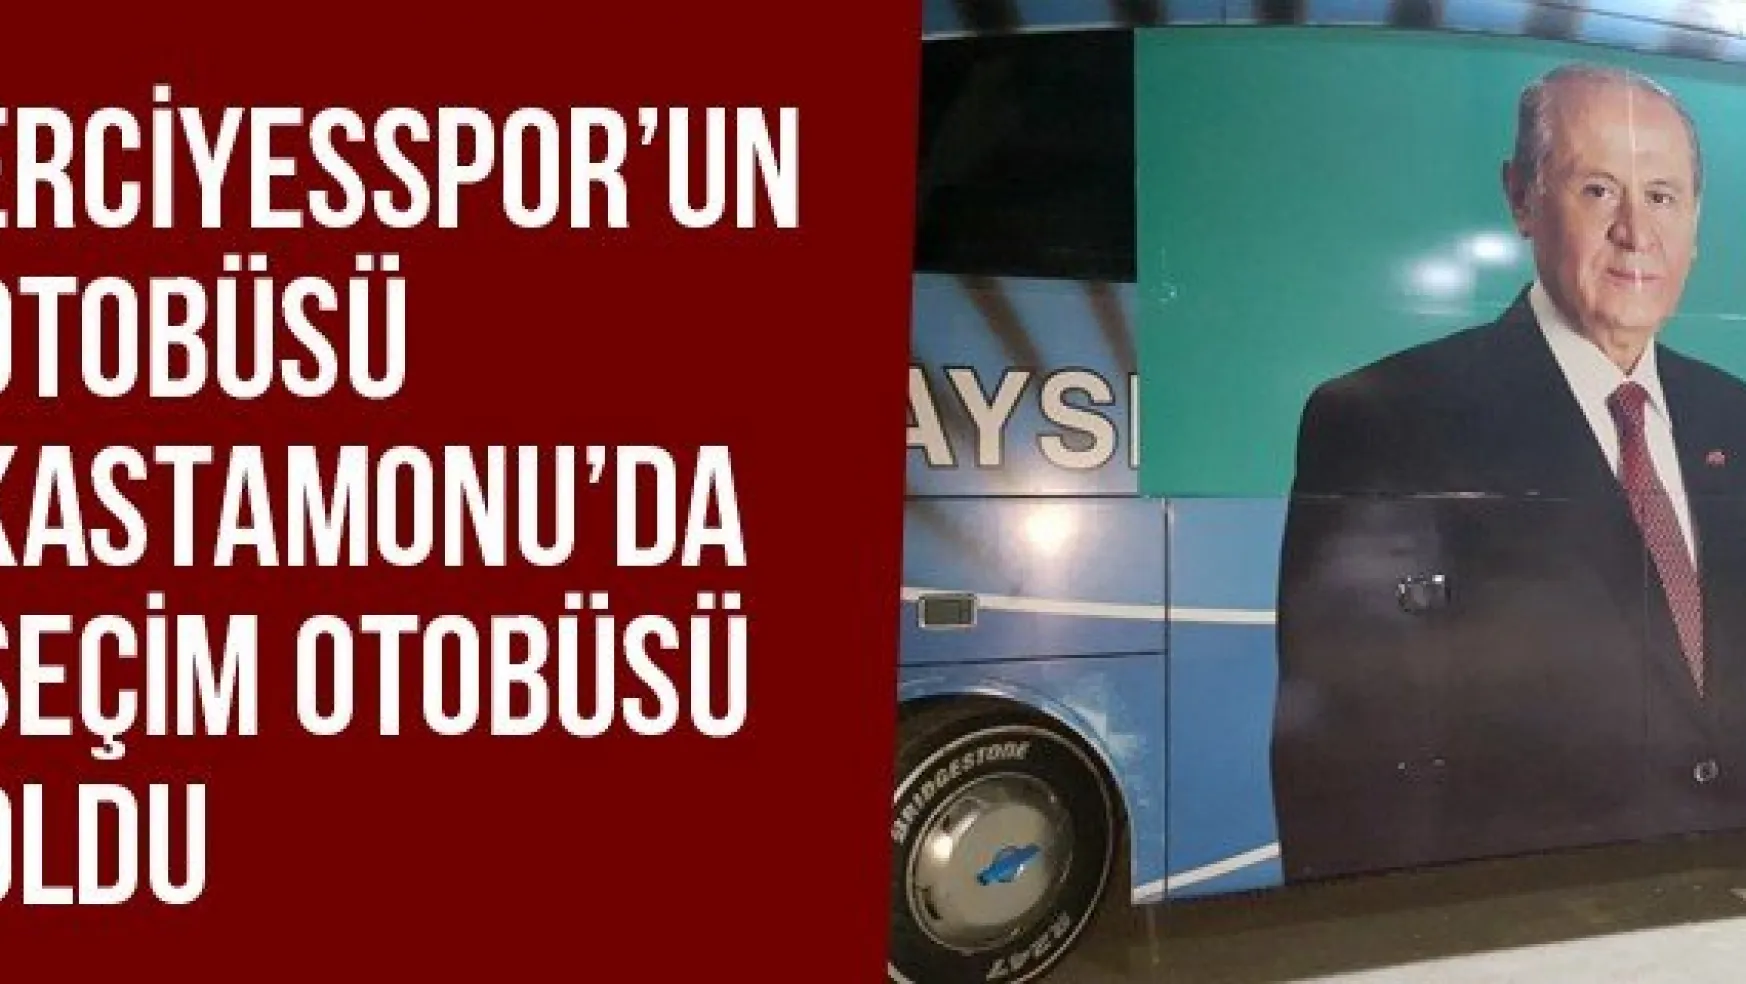 Erciyesspor'un Otobüsü Kastamonu'da Seçim Otobüsü Oldu